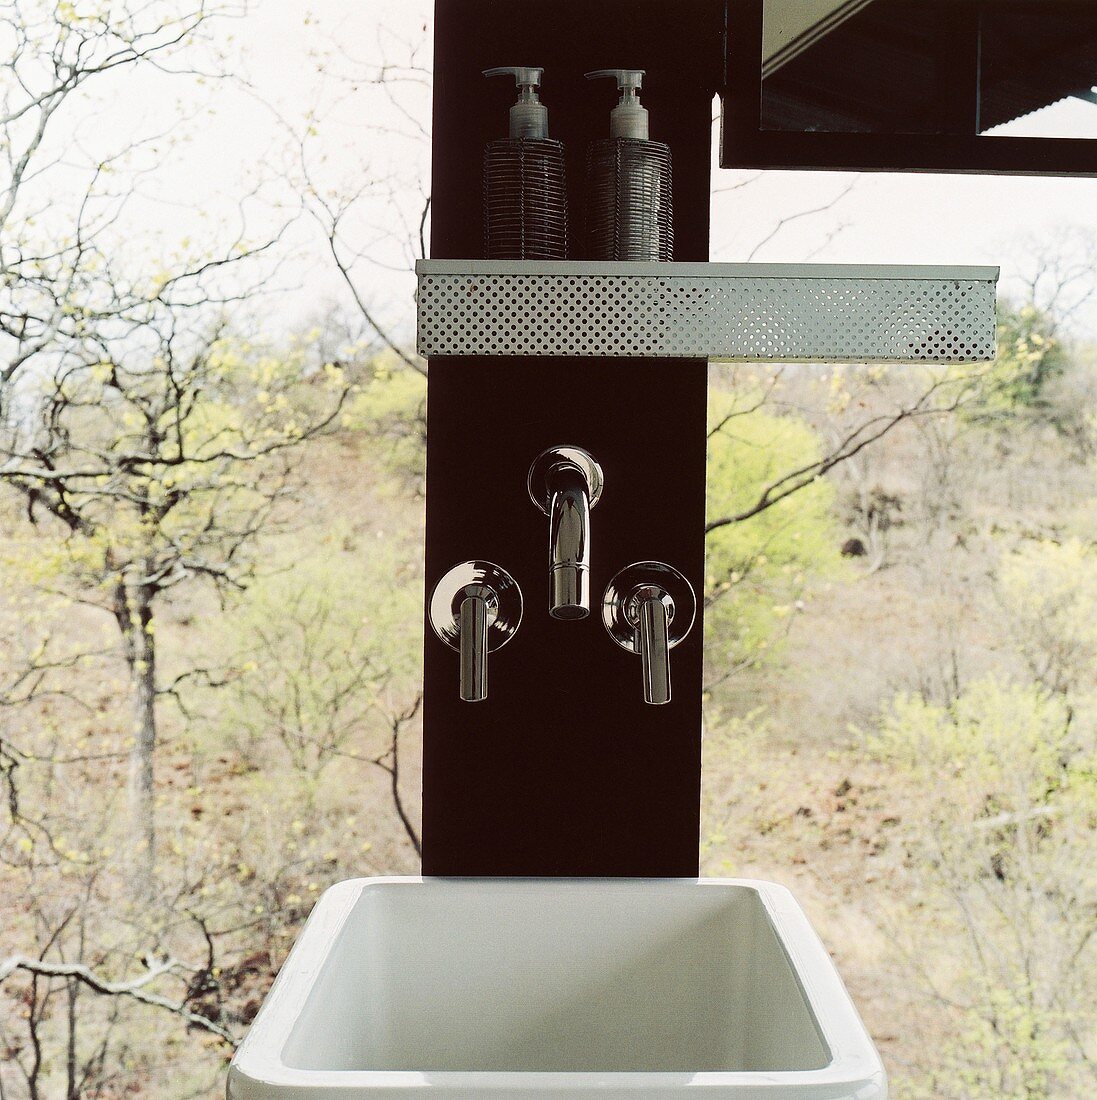 Waschbecken und Armaturen in einer Holzsäule vor Panoramafenster mit Blick auf den Wald